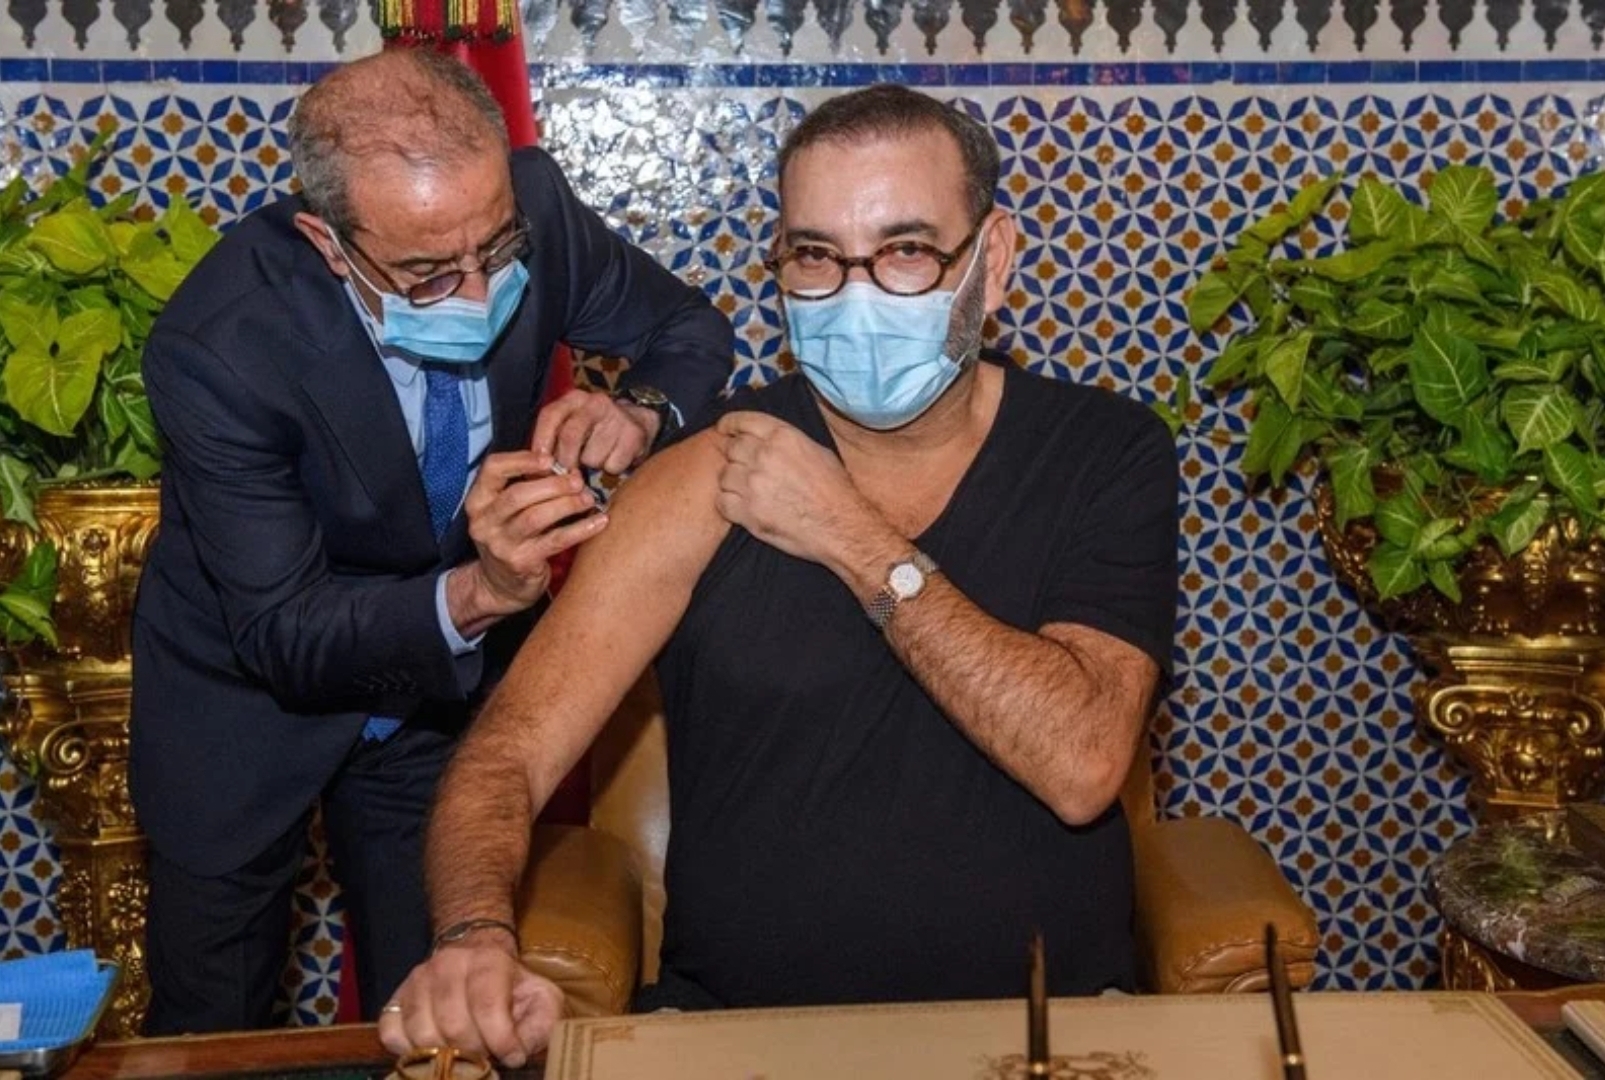 جلالة الملك محمد السادس يتلقى الجرعة الأولى من اللقاح المضاد لكوفيد 19 بالقصر الملكي بفاس ويعلن الانطلاقة الفعلية للحملة الوطنية للتلقيح